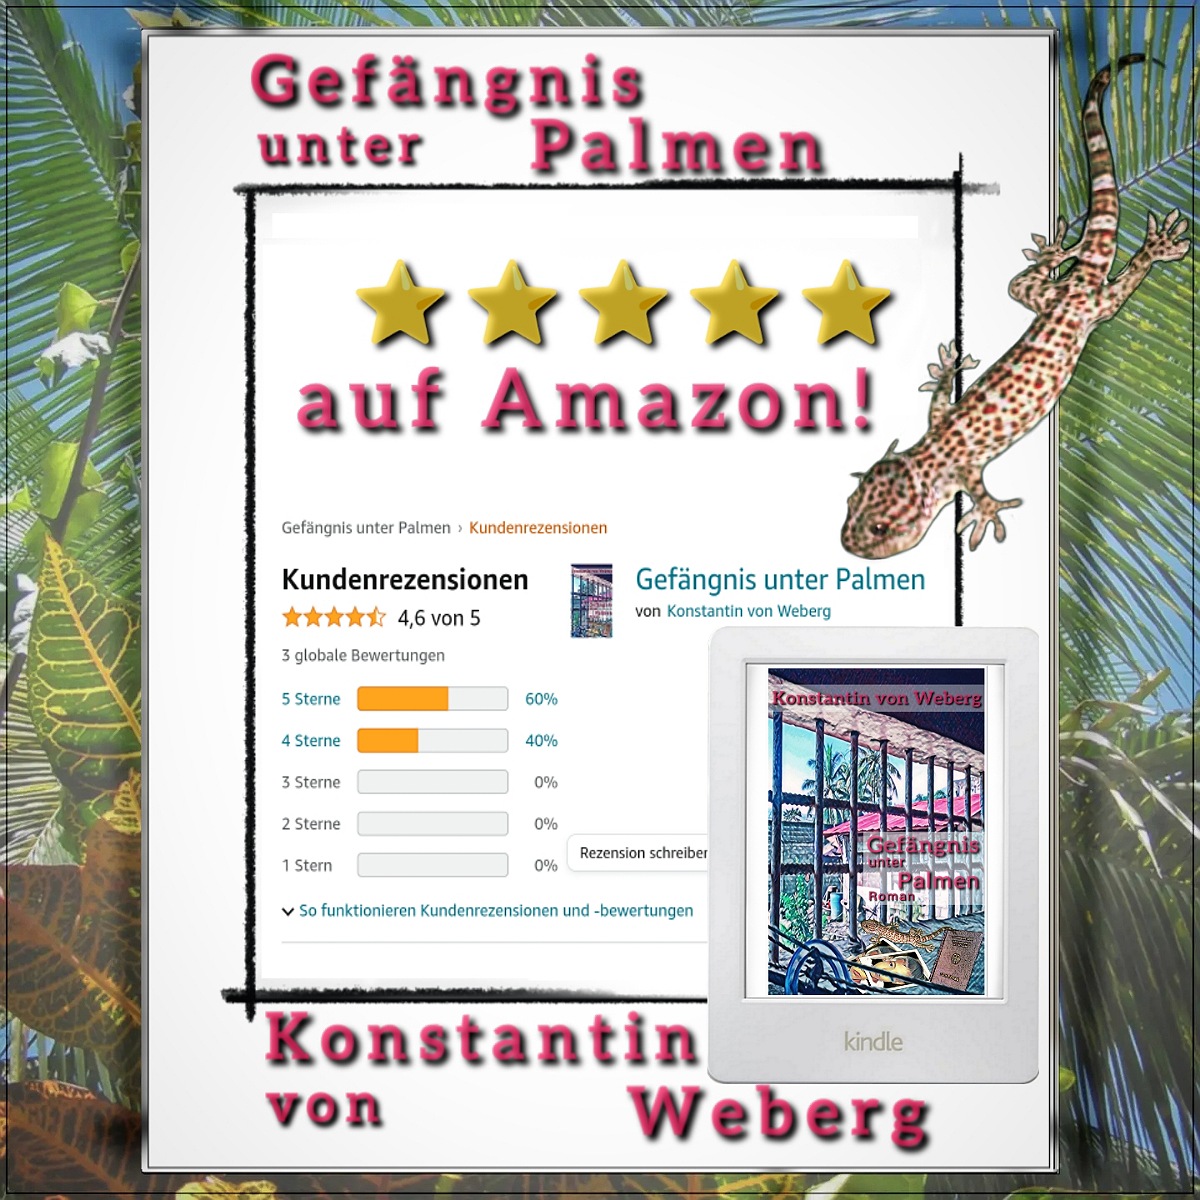 Roman ‚Gefängnis unter Palmen‘ erhältlich bei Amazon